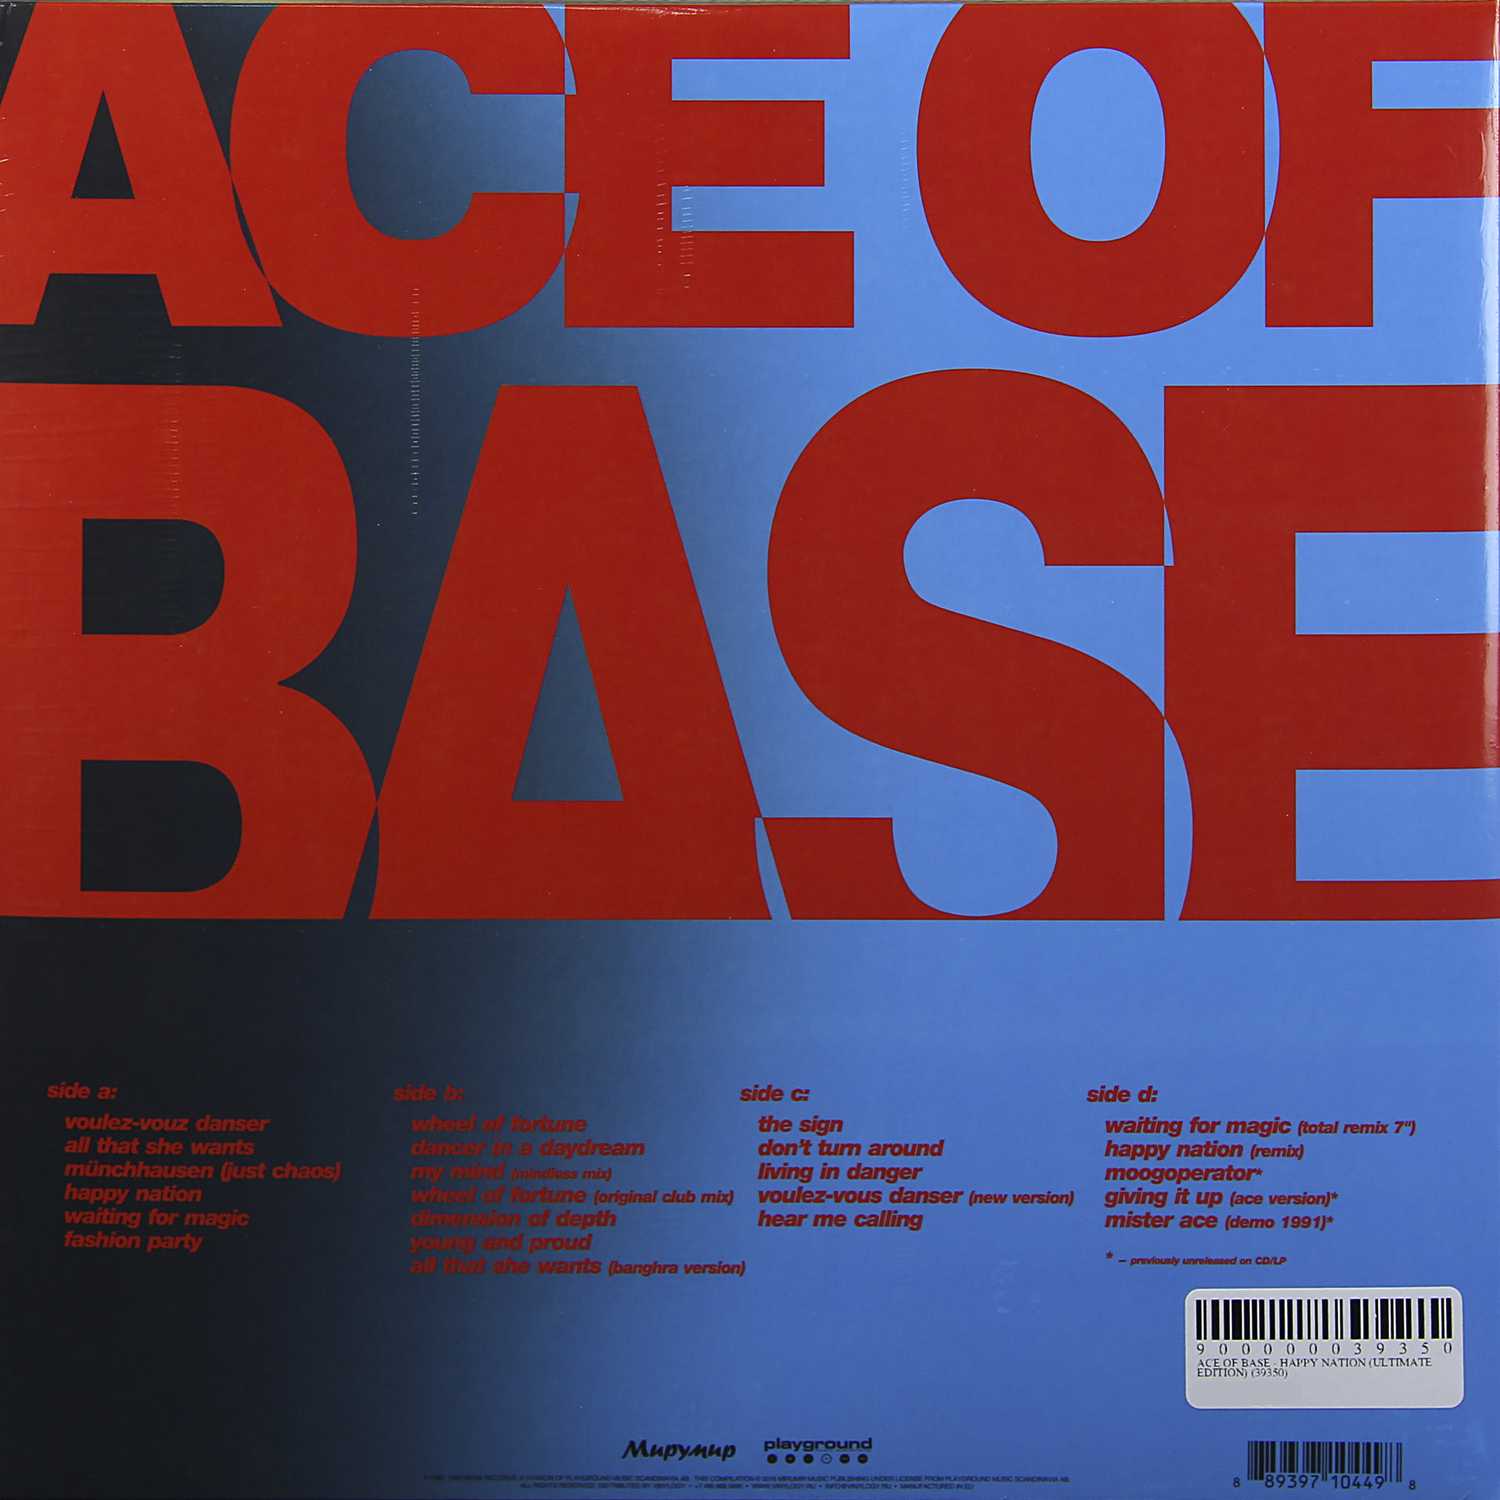 Биография ace of base: популярный шведский поп-коллектив